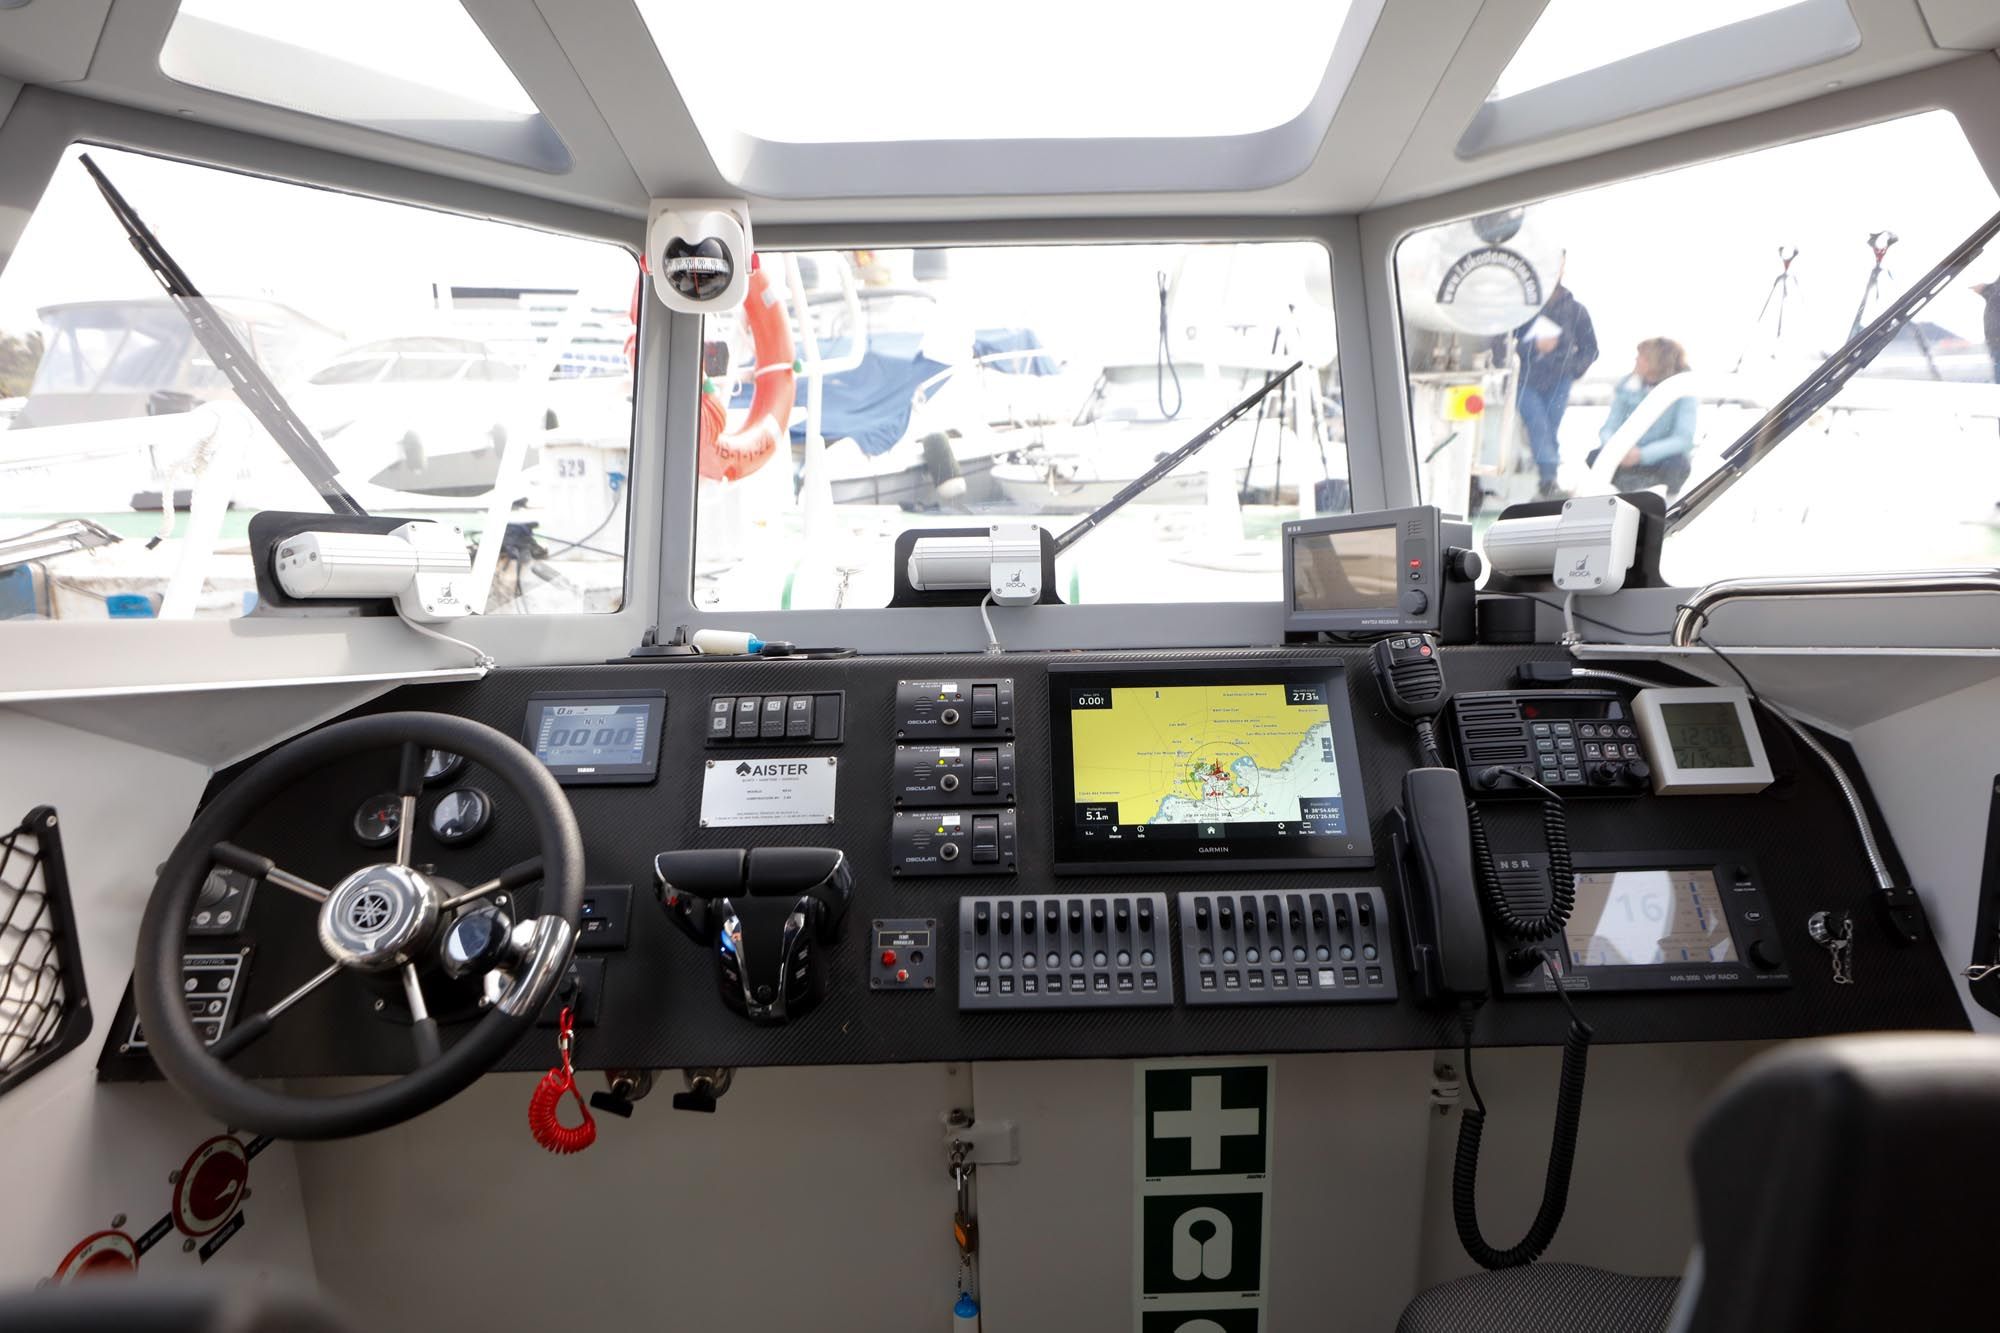 La inspección de pesca de Ibiza ya cuenta con el ‘Artet’, con motores de 300 caballos